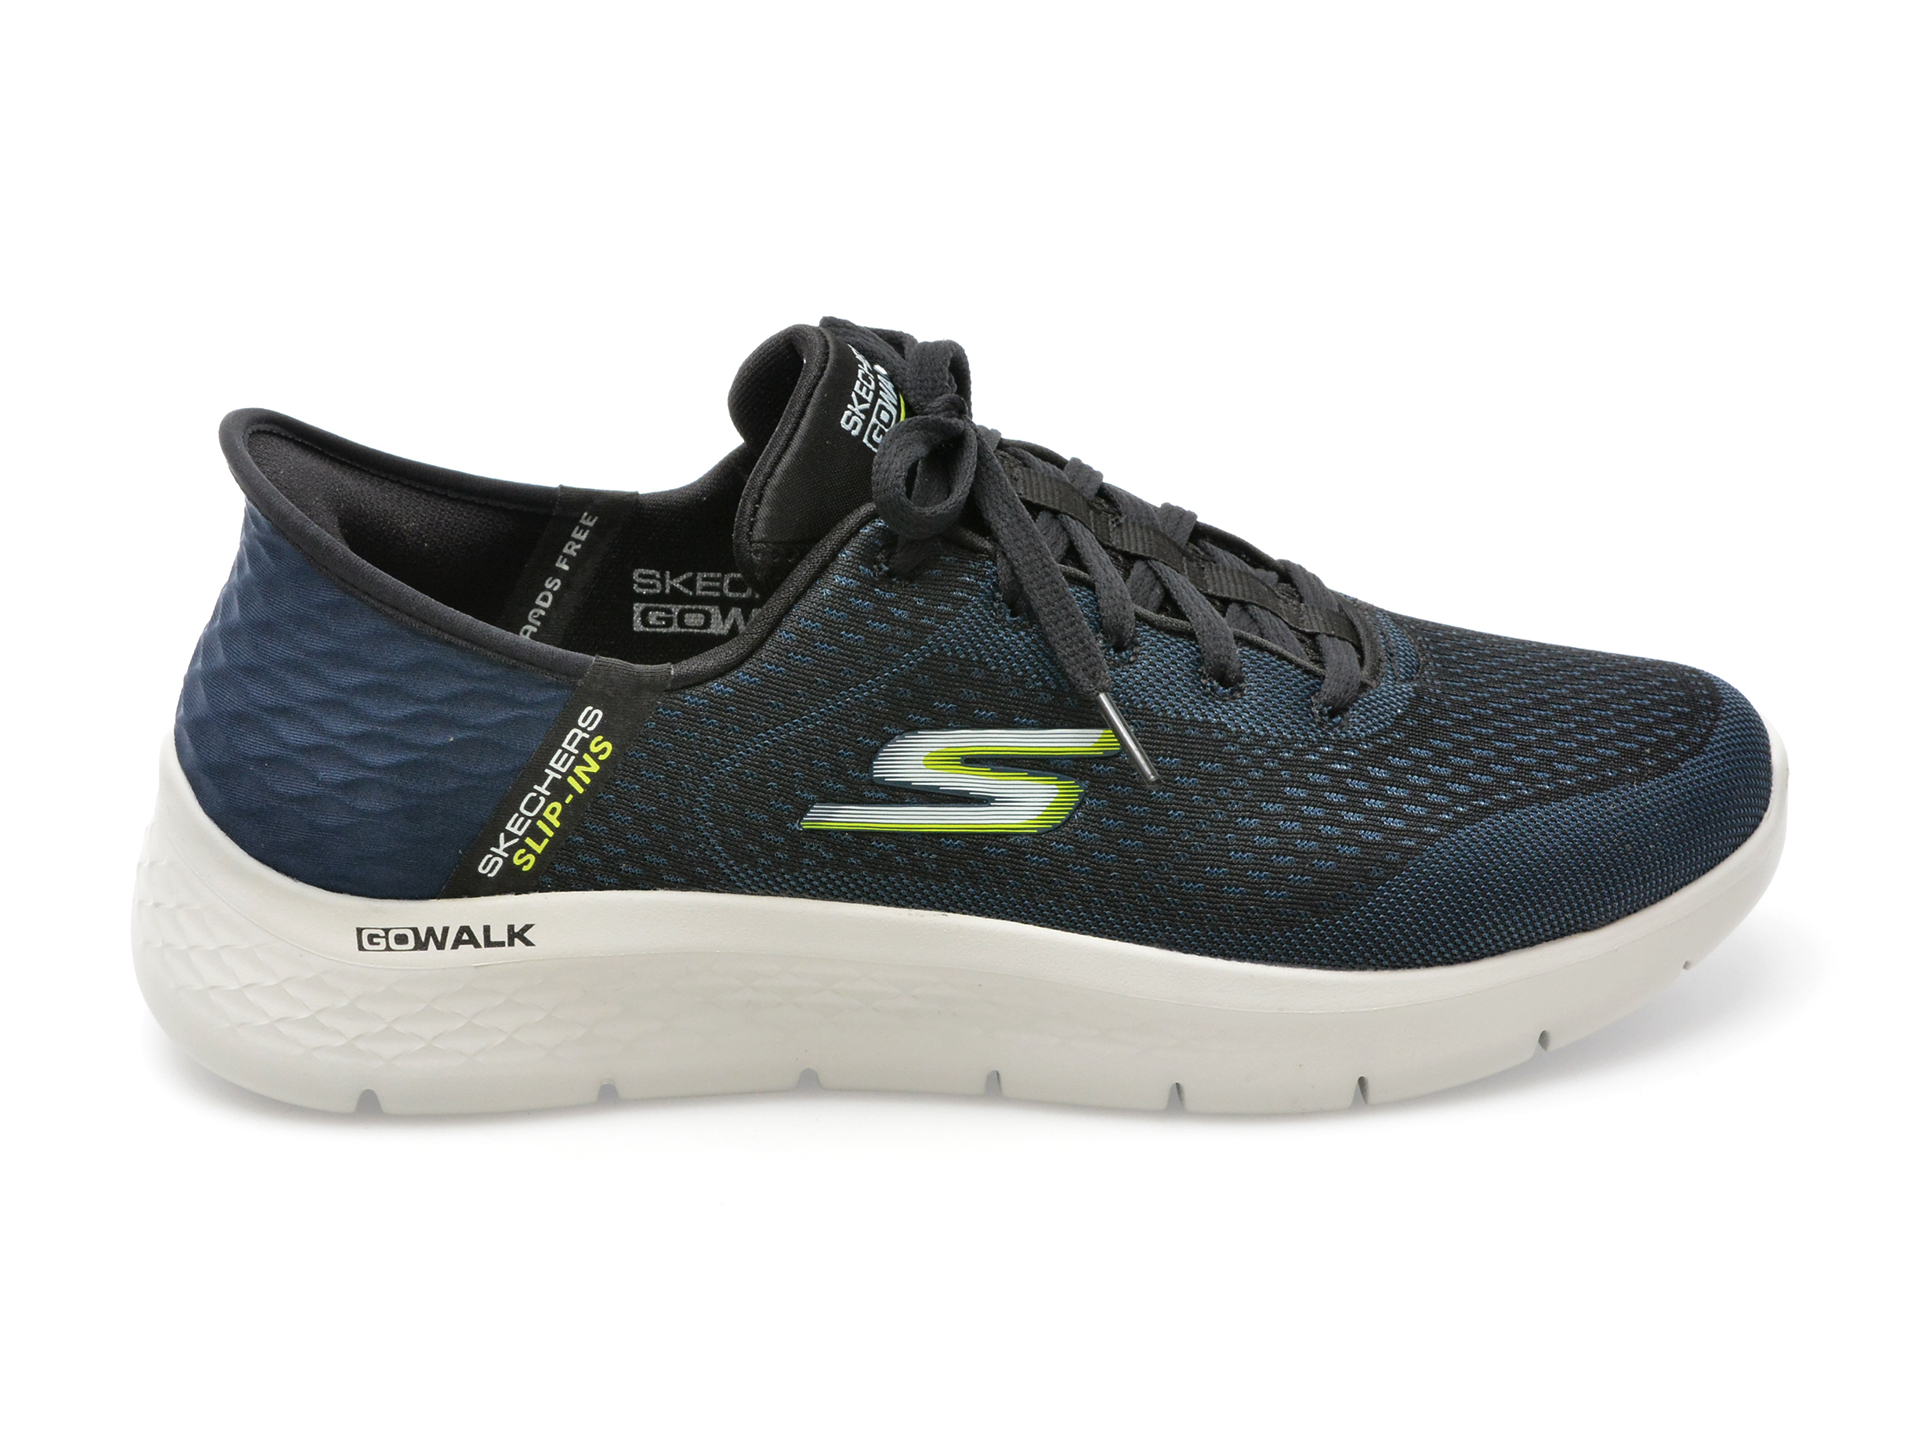 Pantofi sport SKECHERS bleumarin, GO WALK FLEX, din material textil